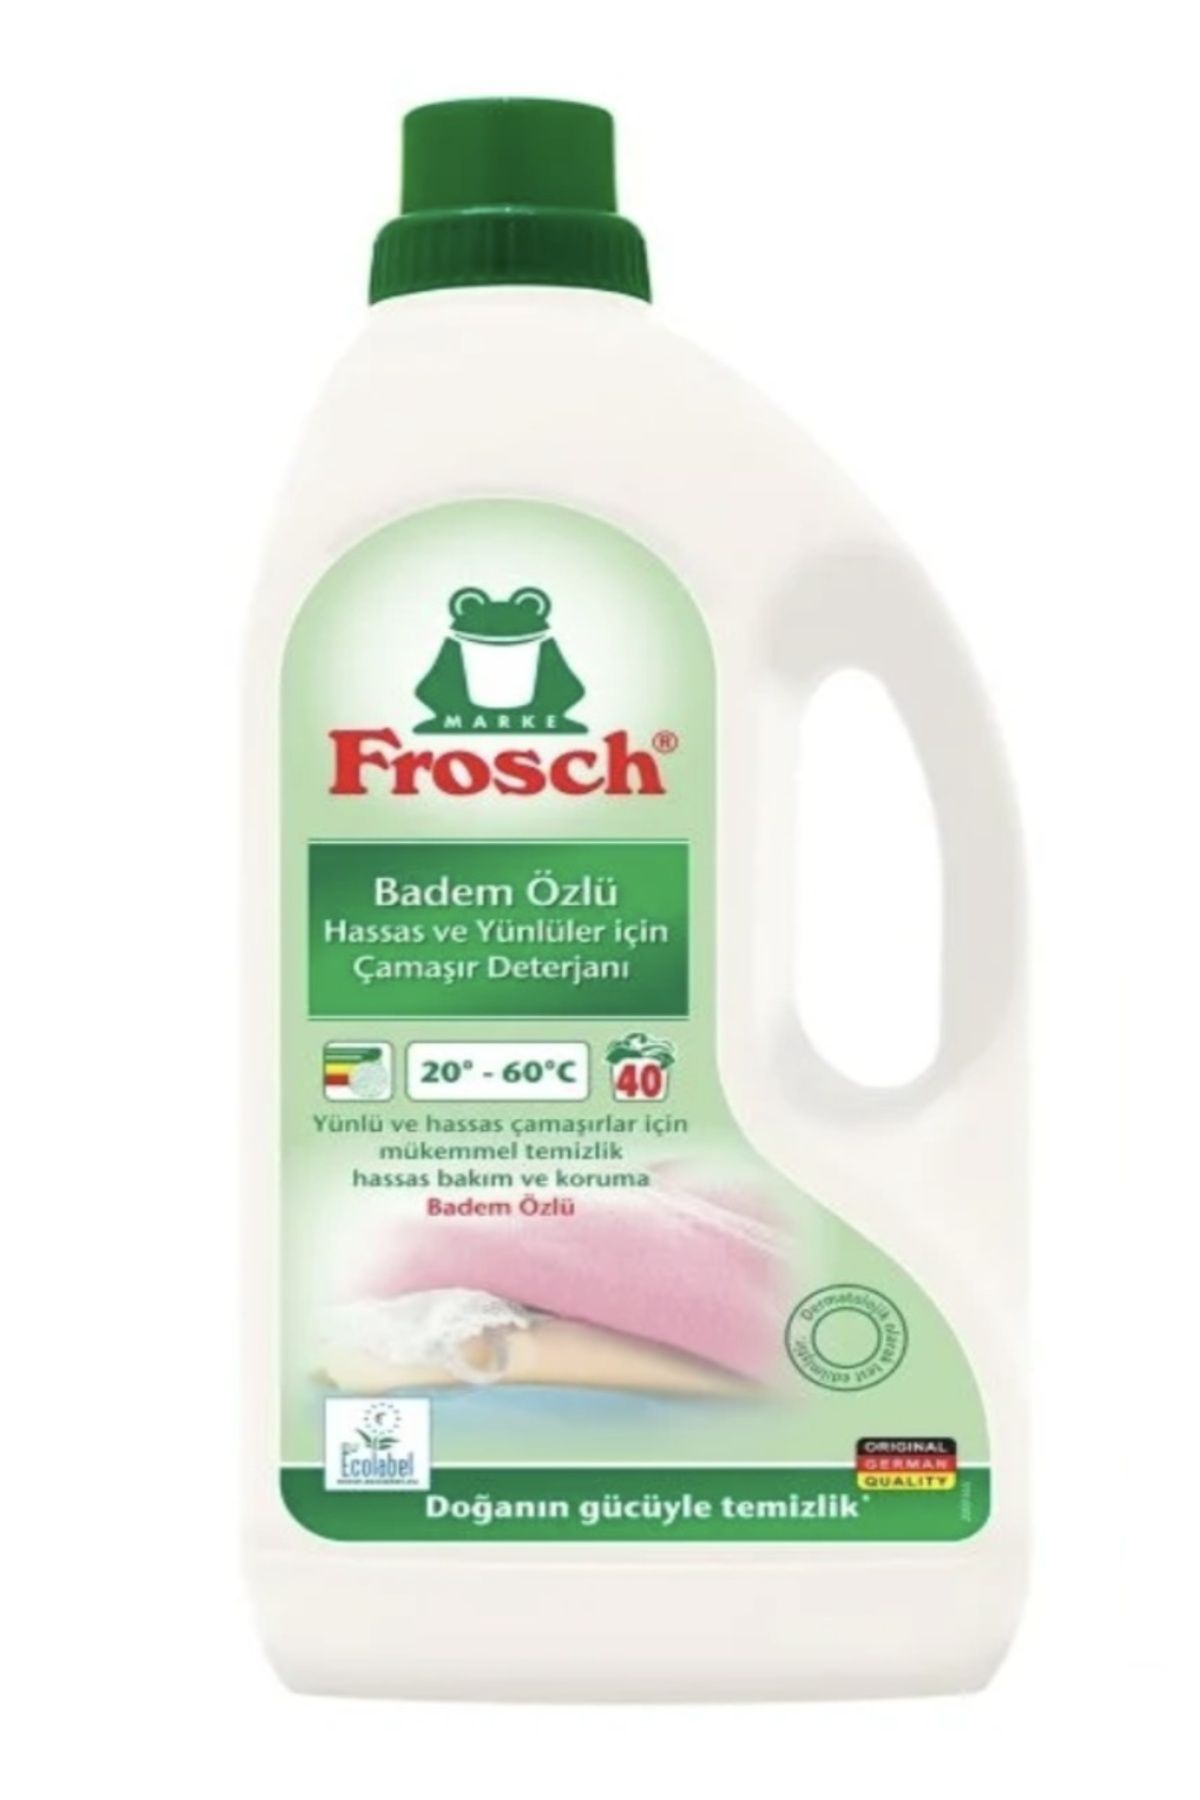 Frosch Badem Özlü Hassas Ve Yünlüler Çamaşır Deterjanı 1.5 L